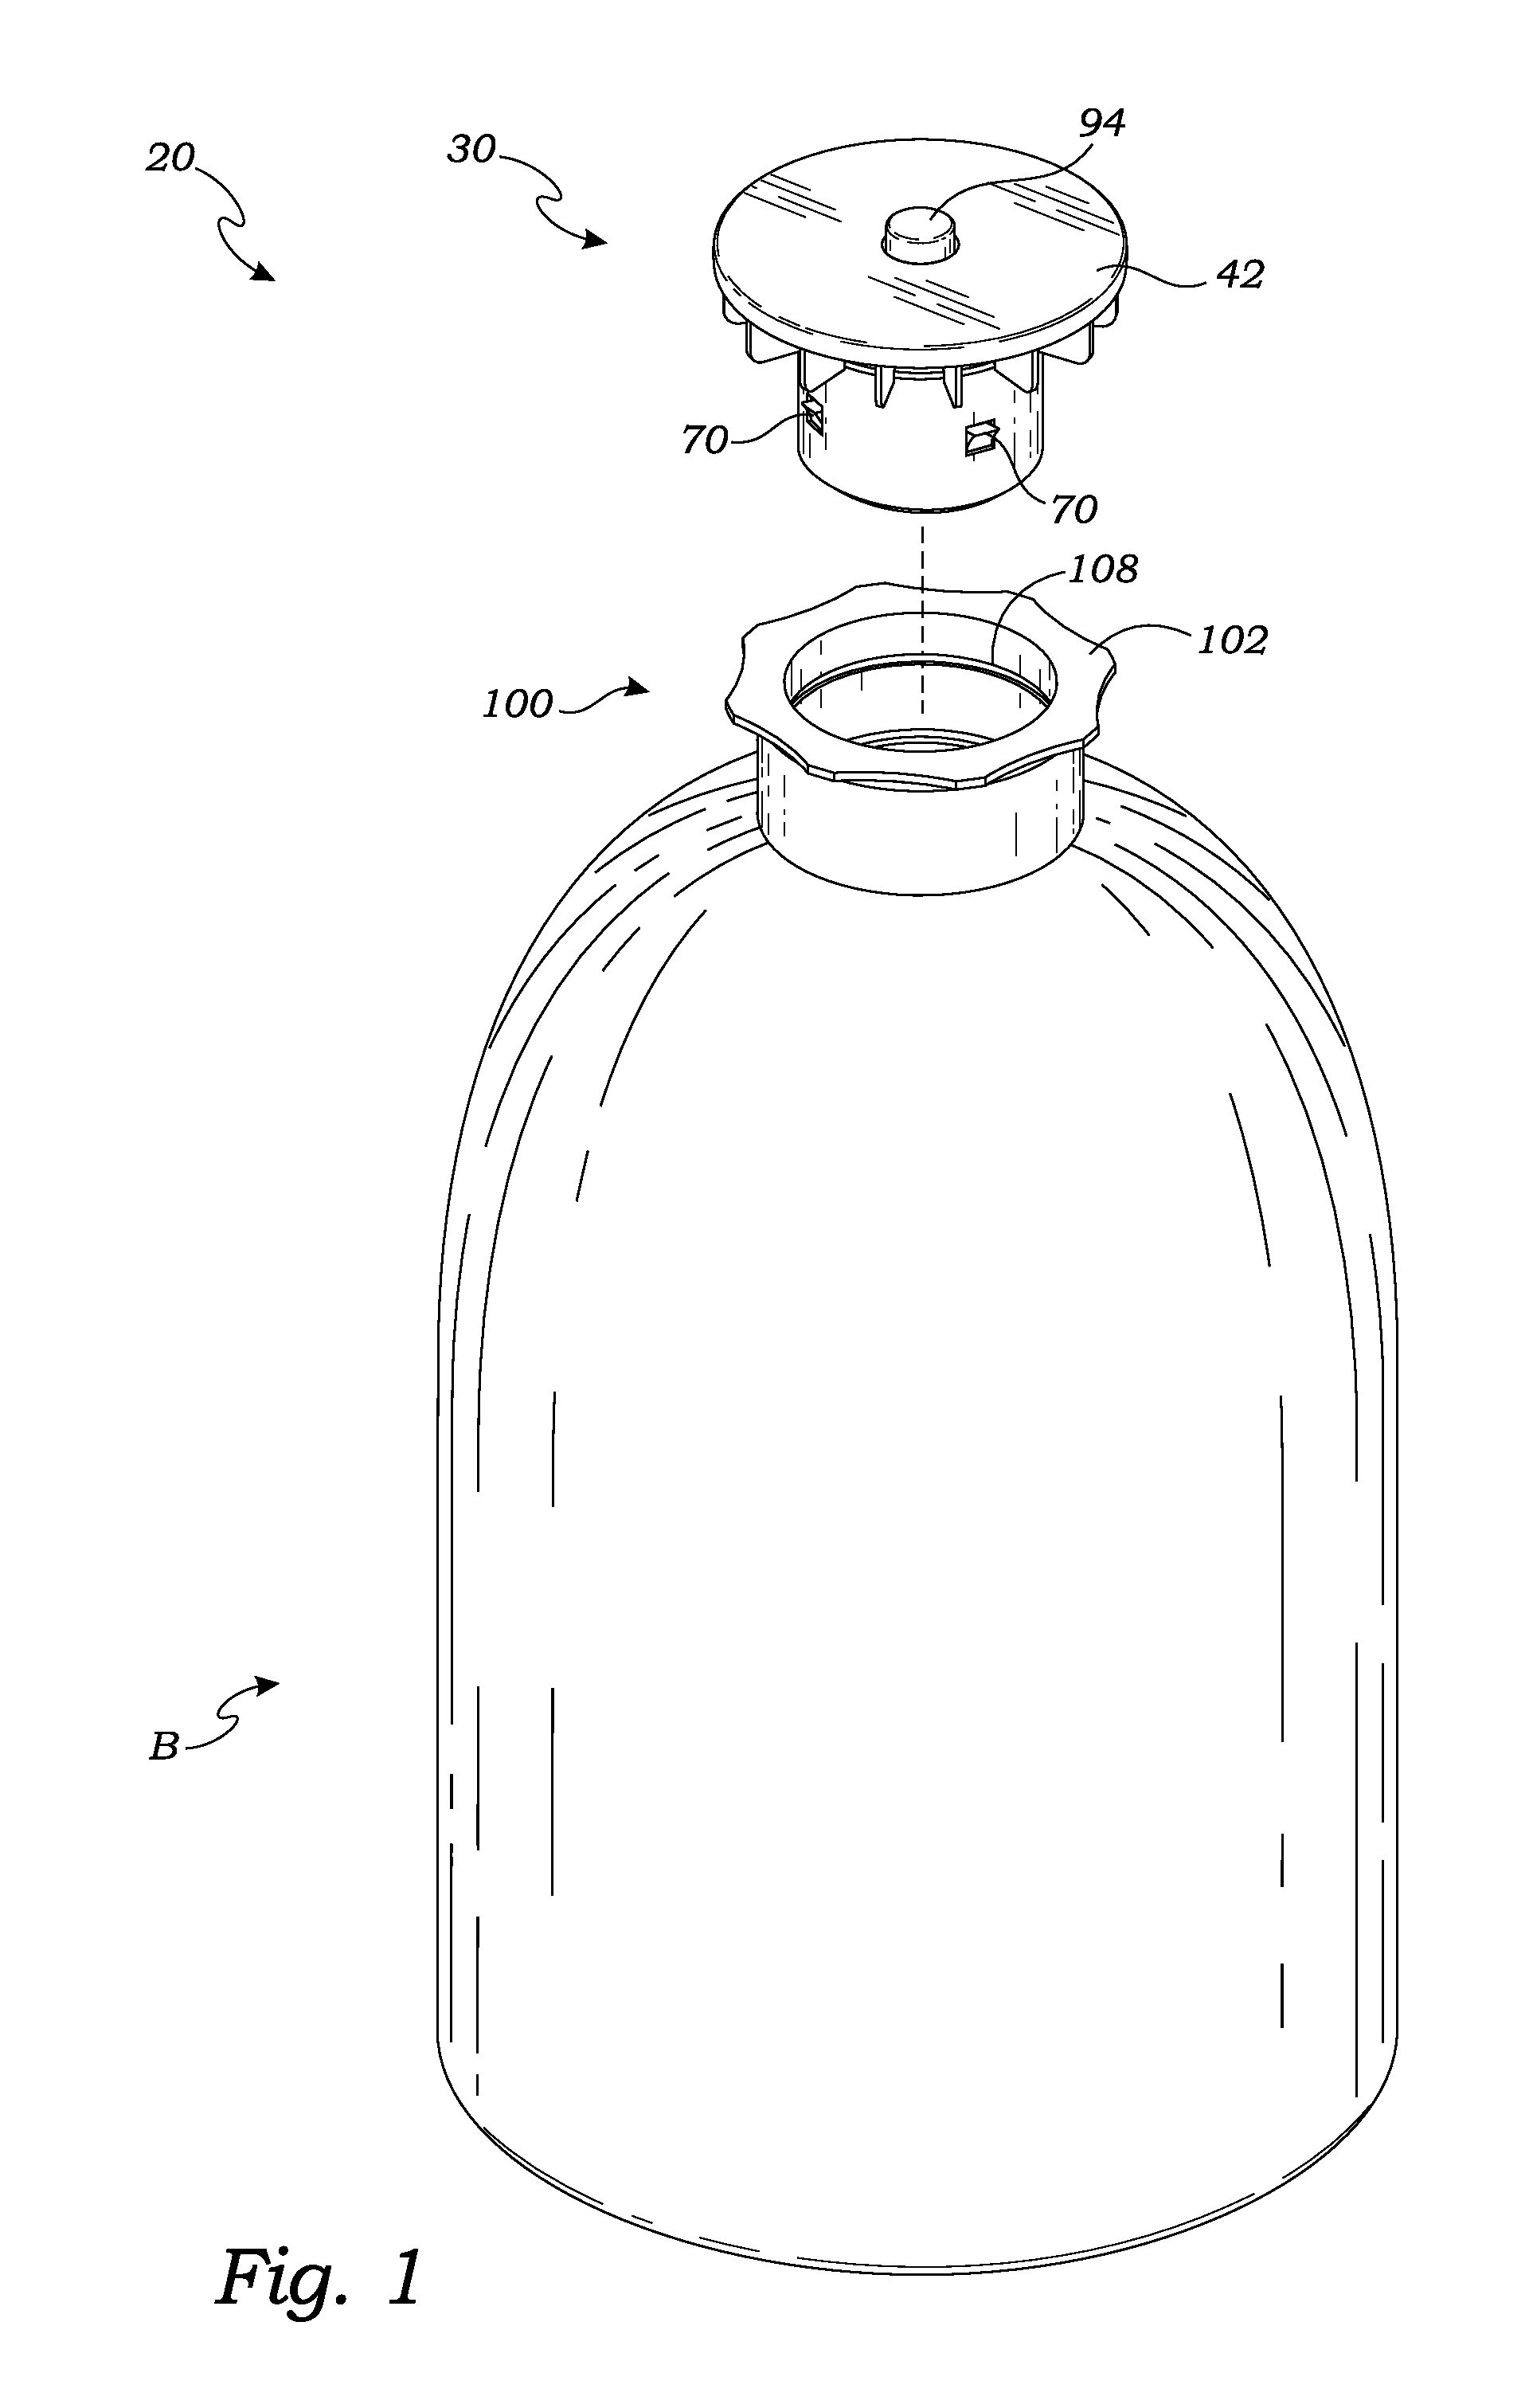 Bottle cap apparatus